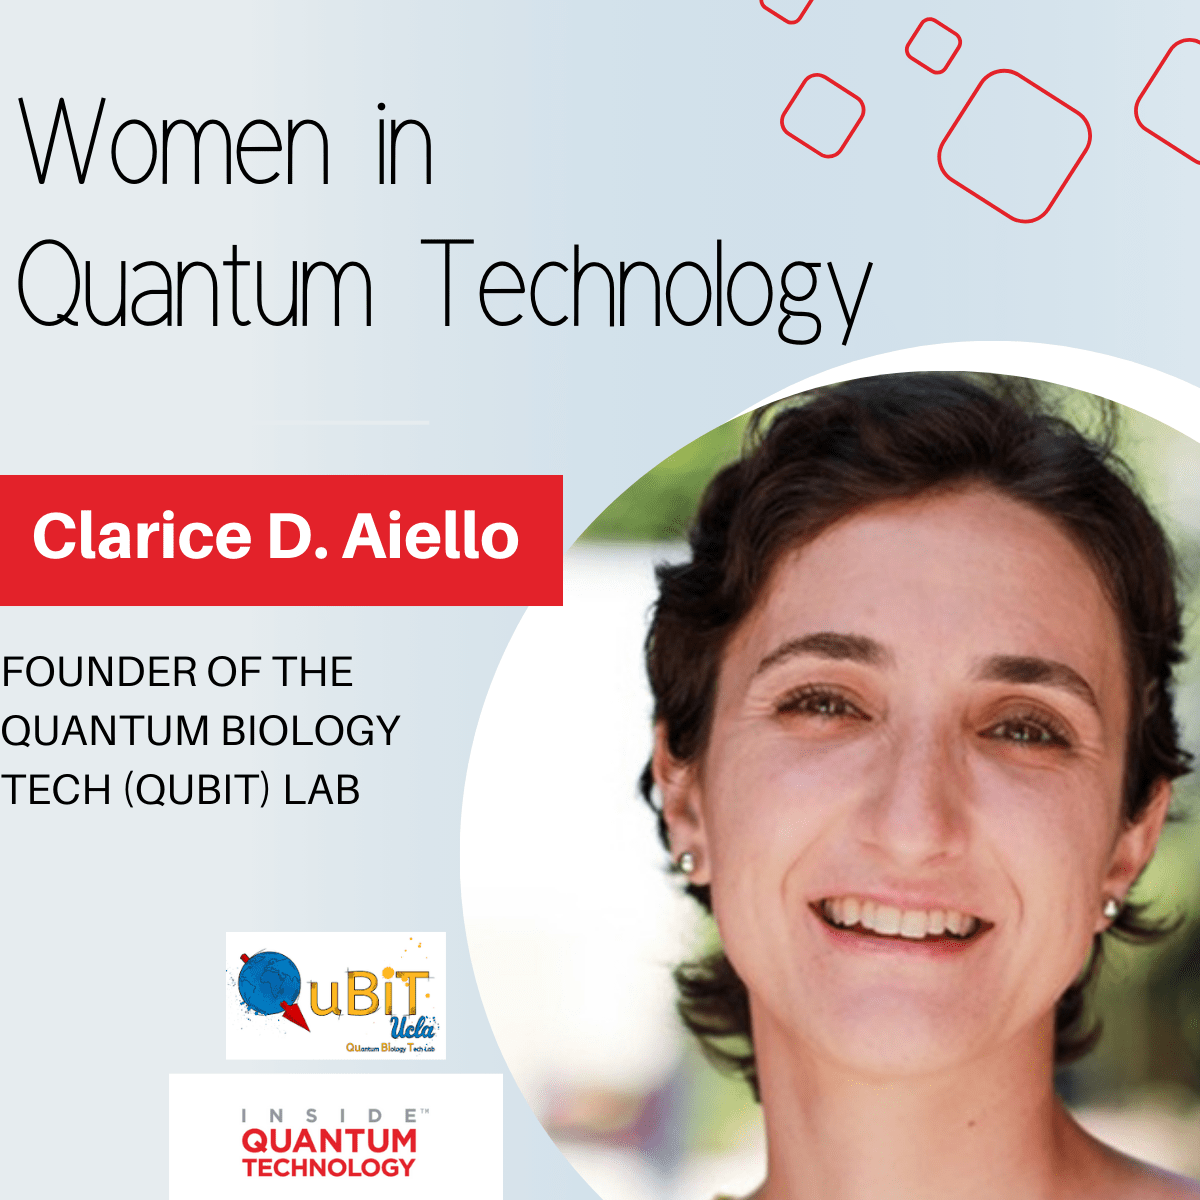 Dr. Clarice D. Aiello, ustanoviteljica laboratorija QuBiT, govori o svojem potovanju v kvantni ekosistem.